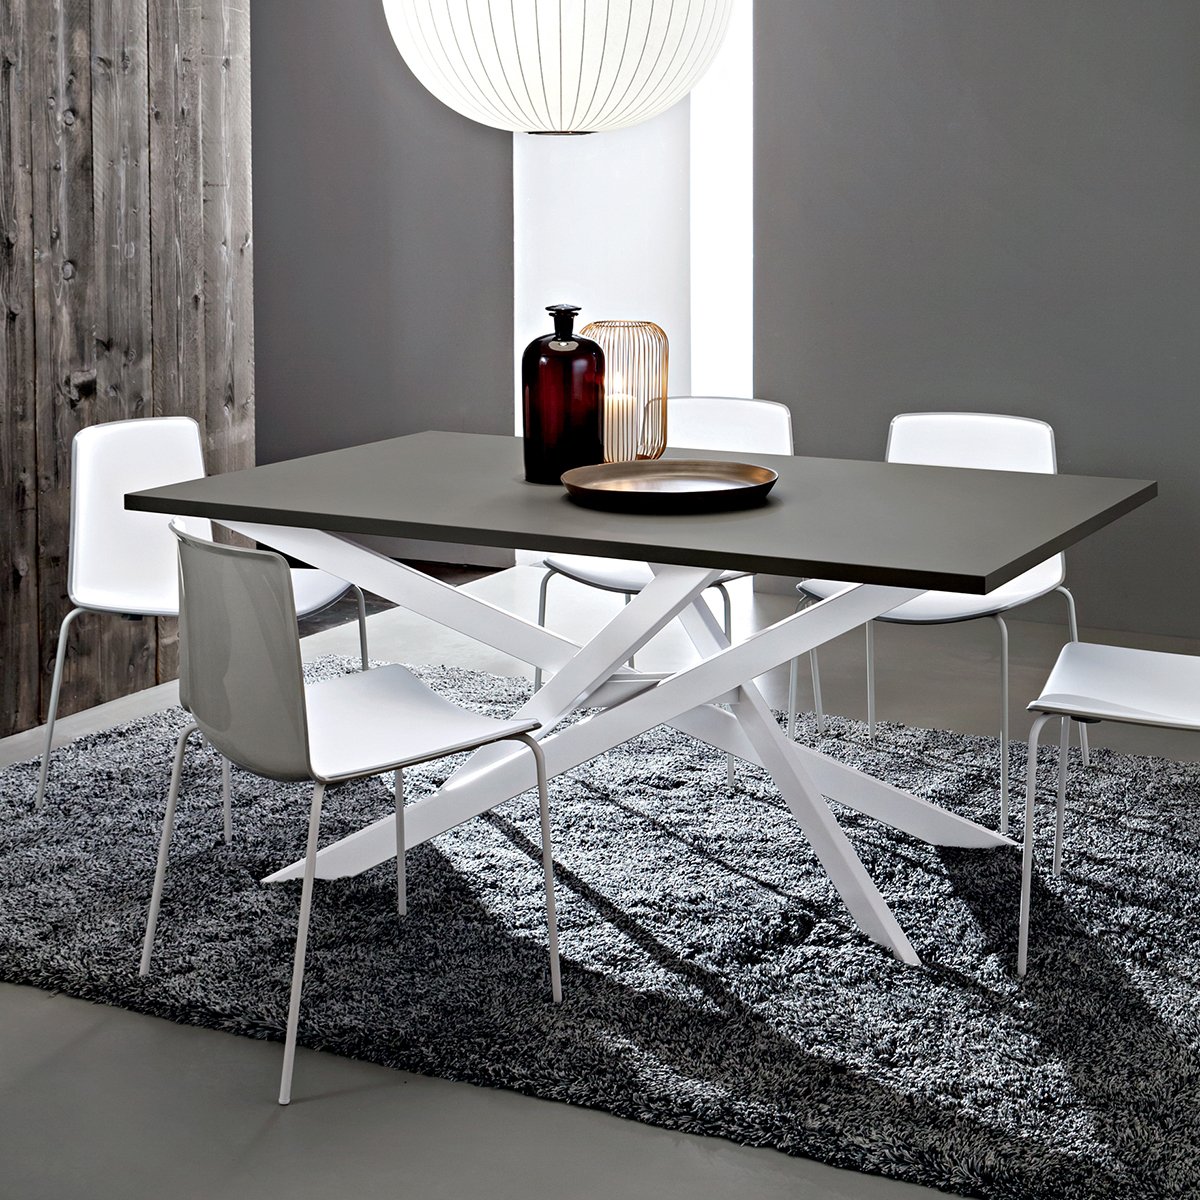 Renzo tavolo design accattivante con gambe incrociate for Gambe tavoli design